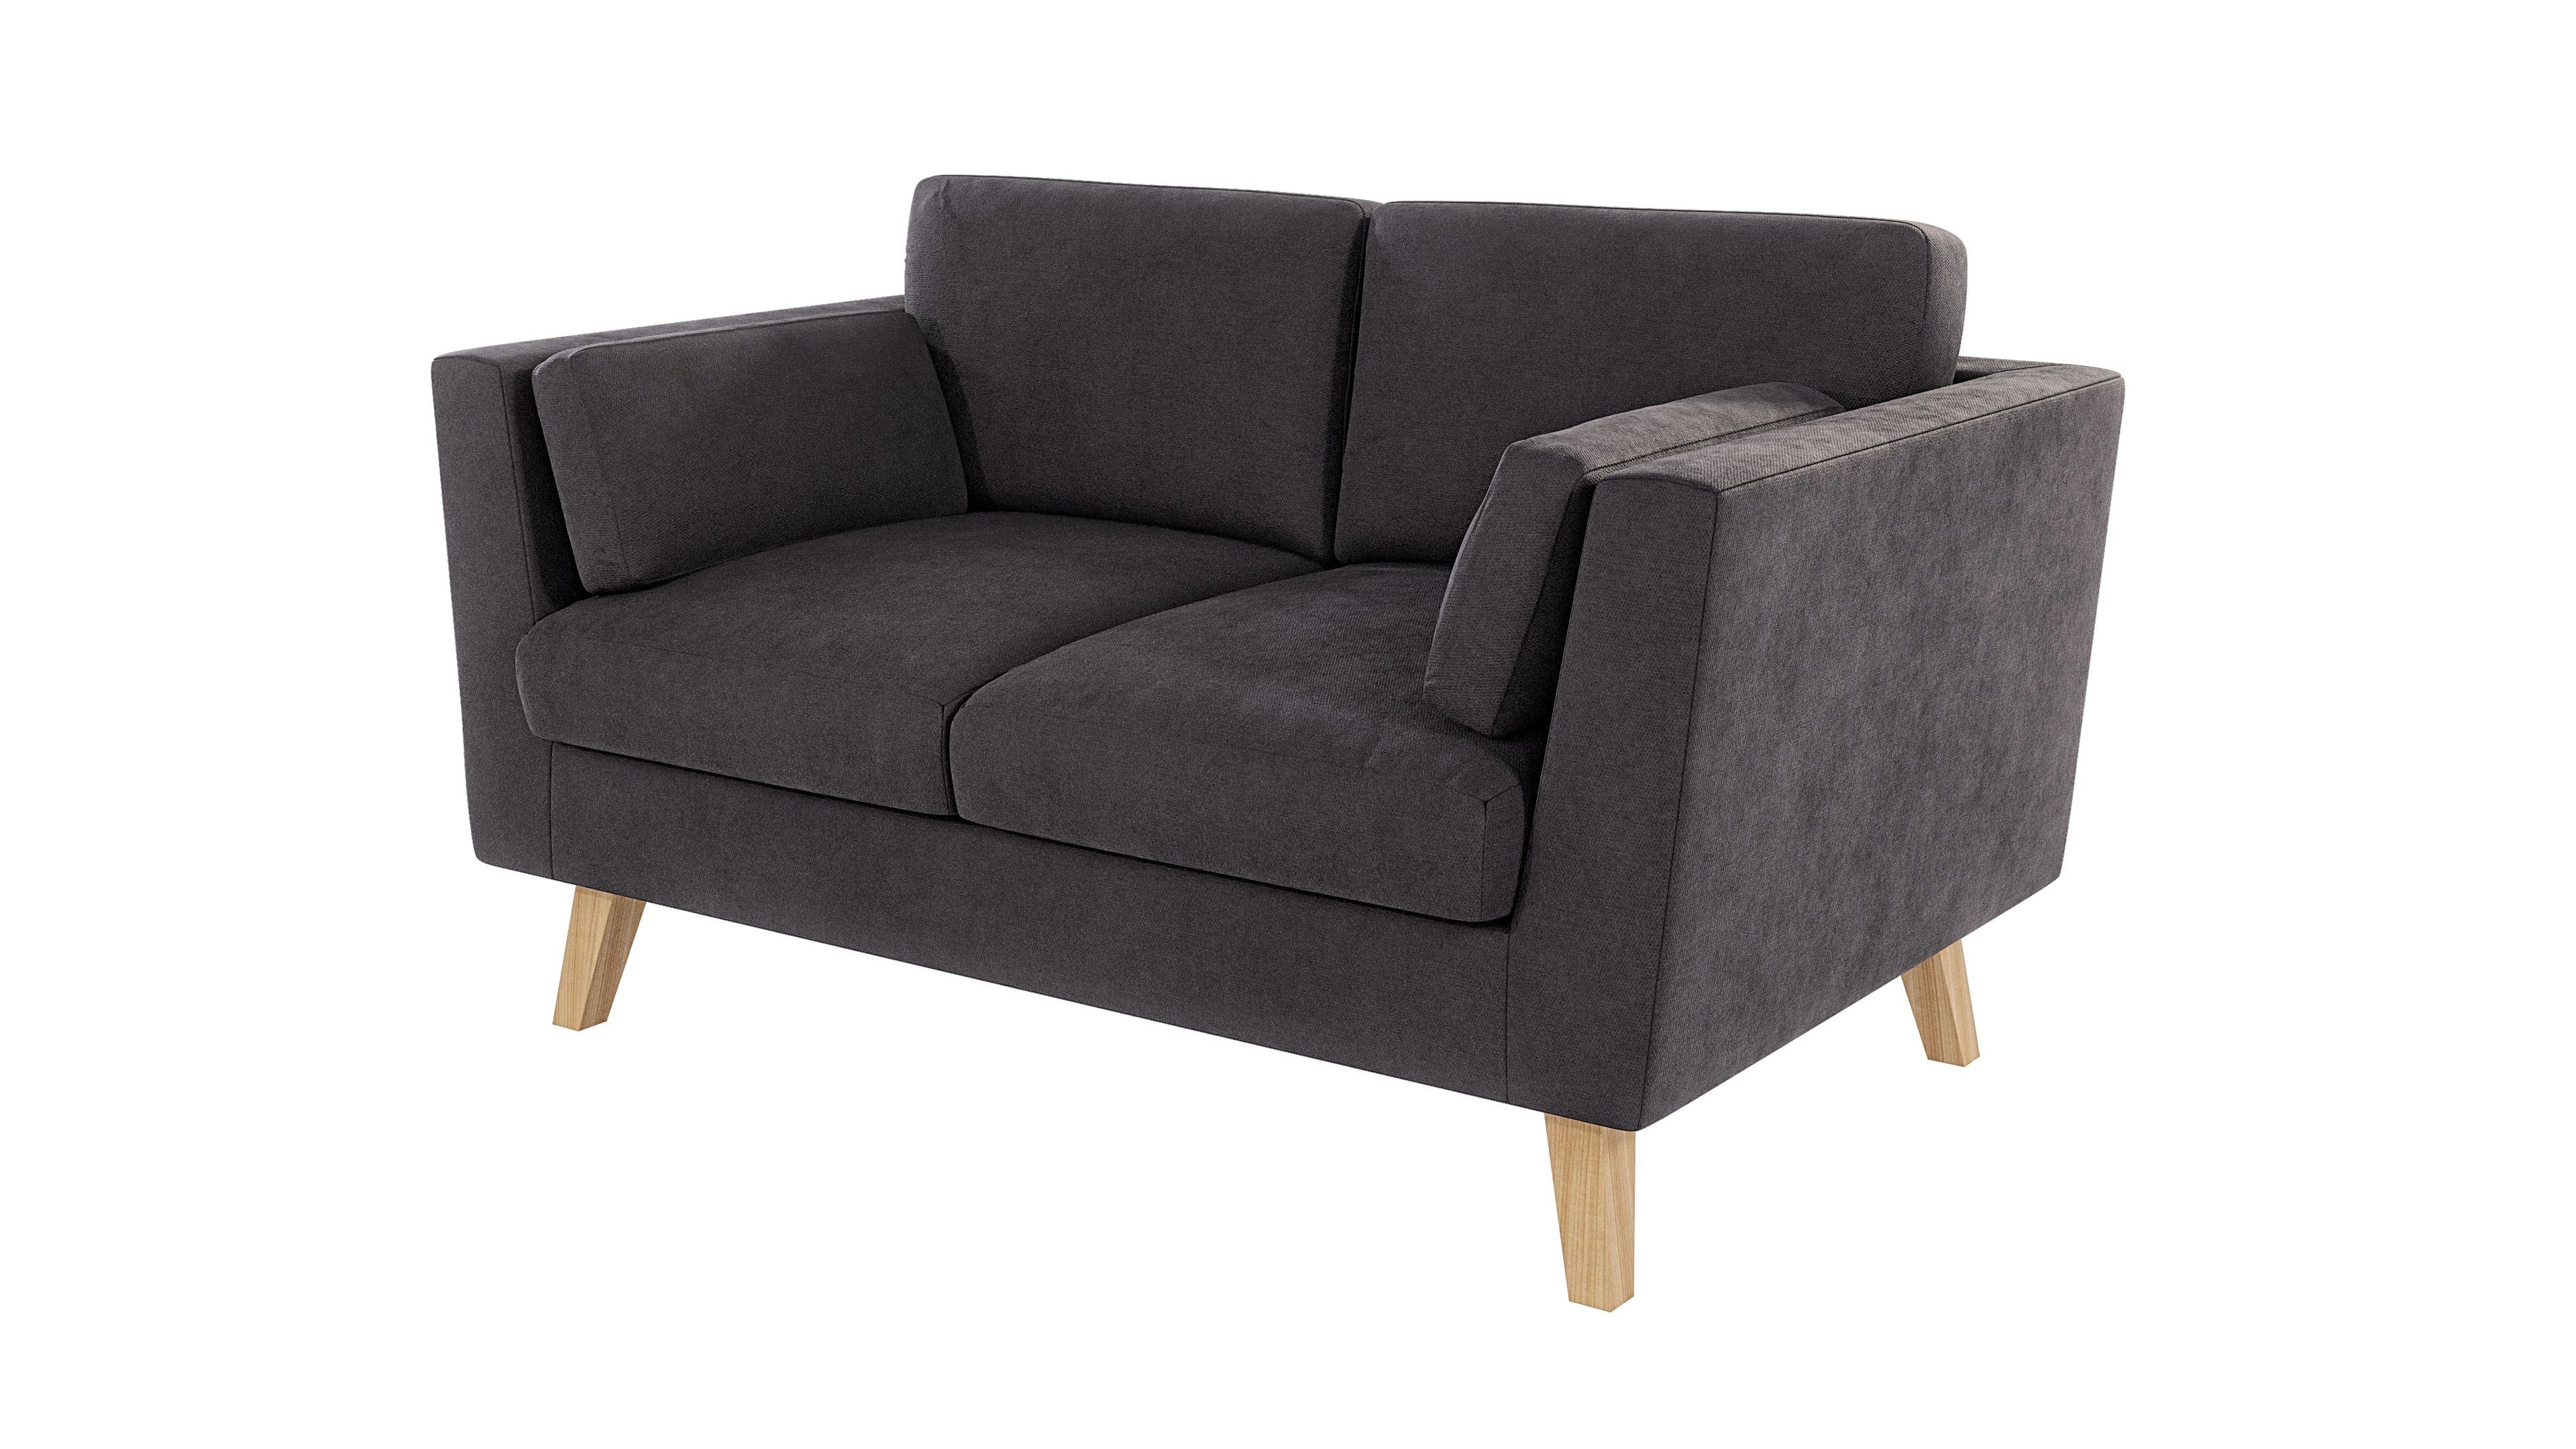 Angeles im Graphit mit skandinavischen S-Style Wellenfederung Sofa Design, 2-Sitzer Möbel